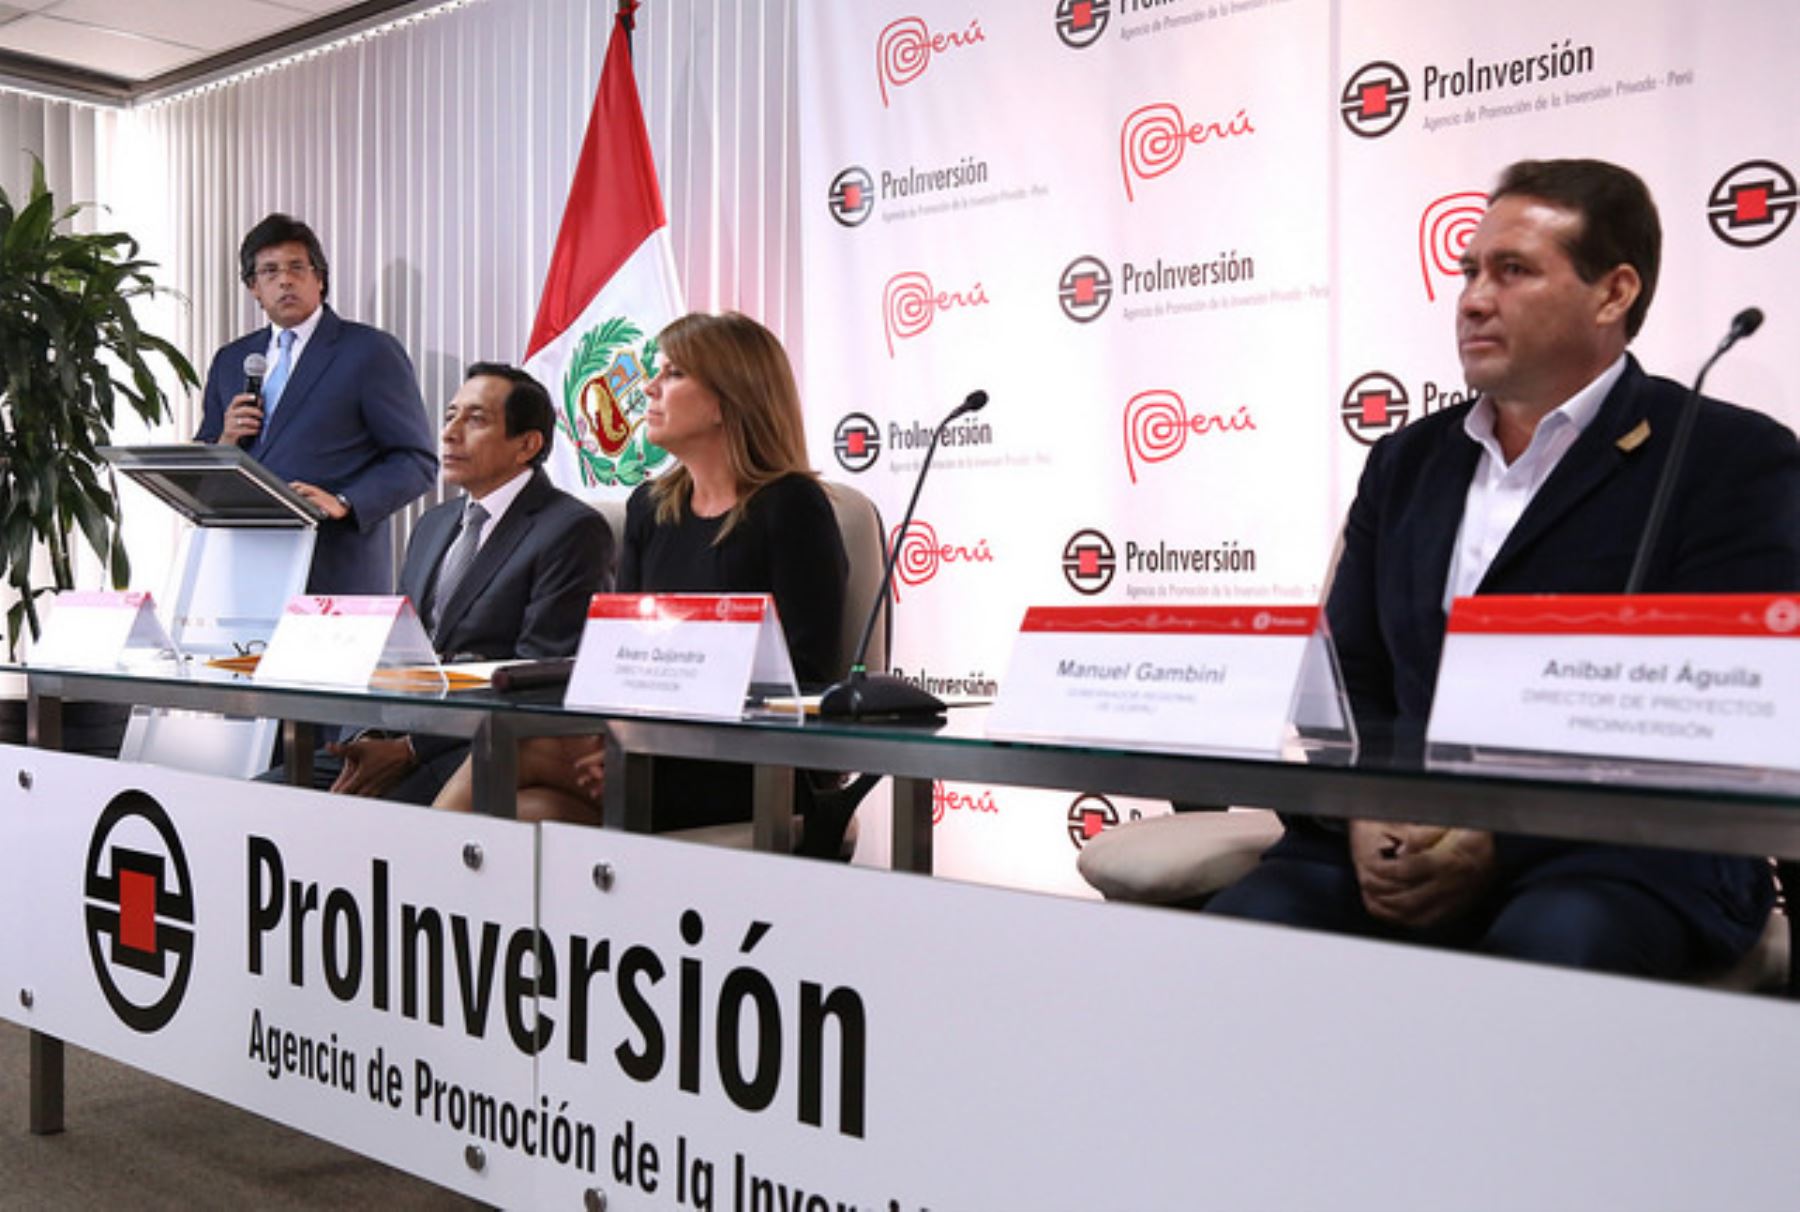 El director ejecutivo de ProInversión, Álvaro Quijandría, expuso la importancia de la línea de transmisión Aguaytía-Pucallpa. Foto: Cortesía ProInversión.